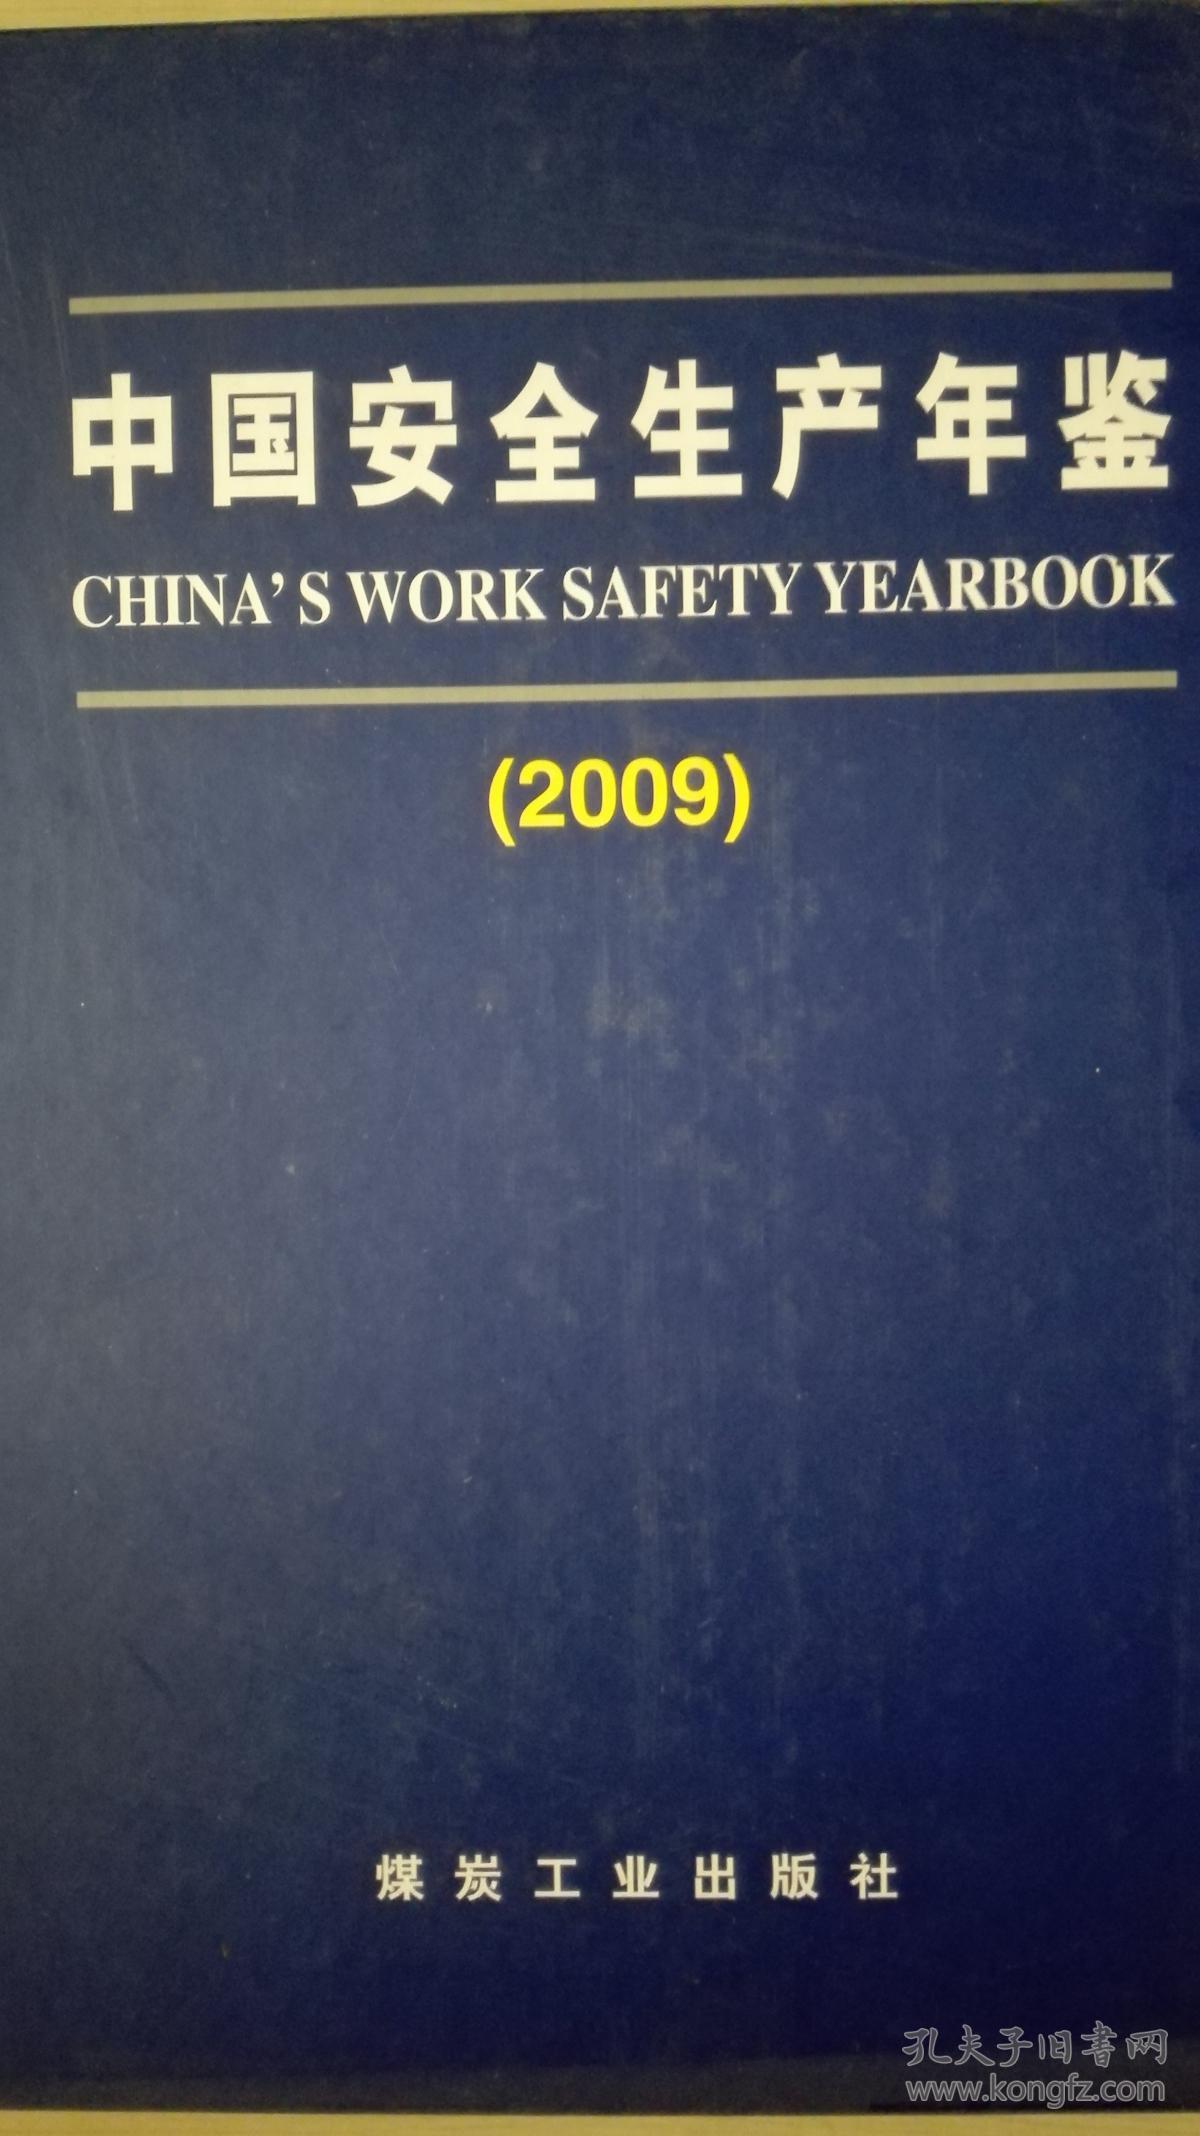 中国安全生产年鉴2009现货处理